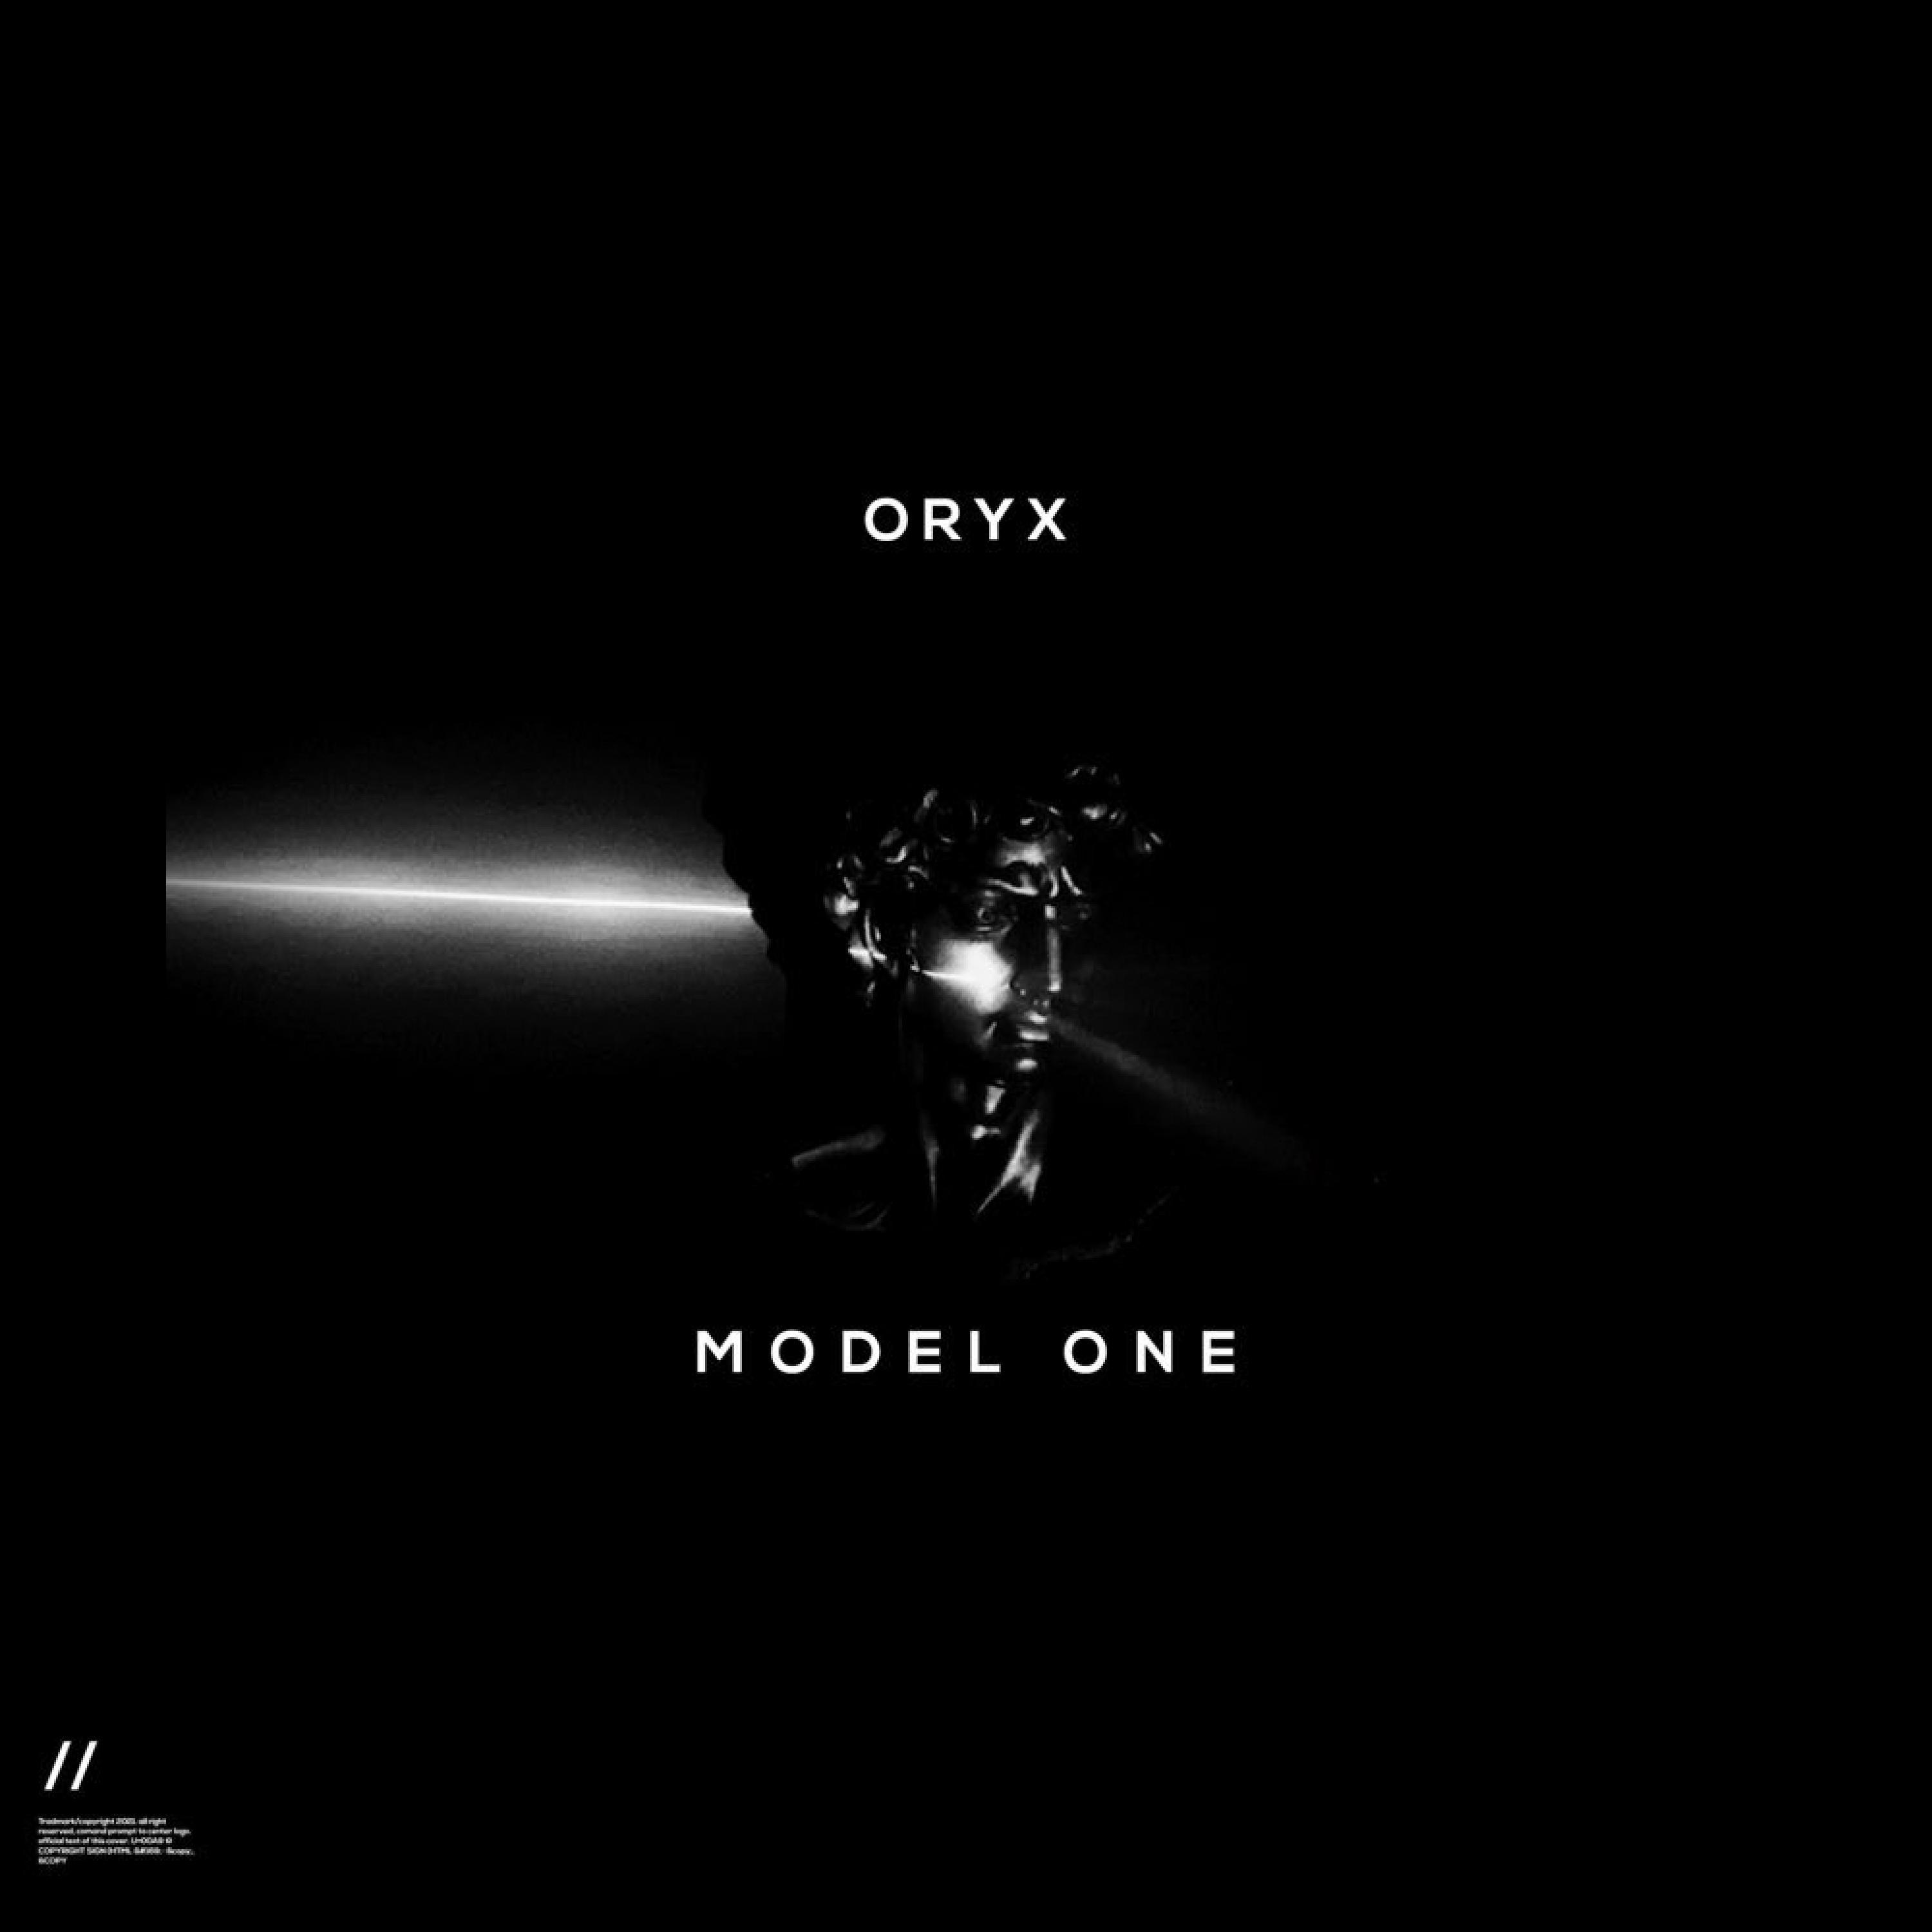 Oryx - Rave Tool